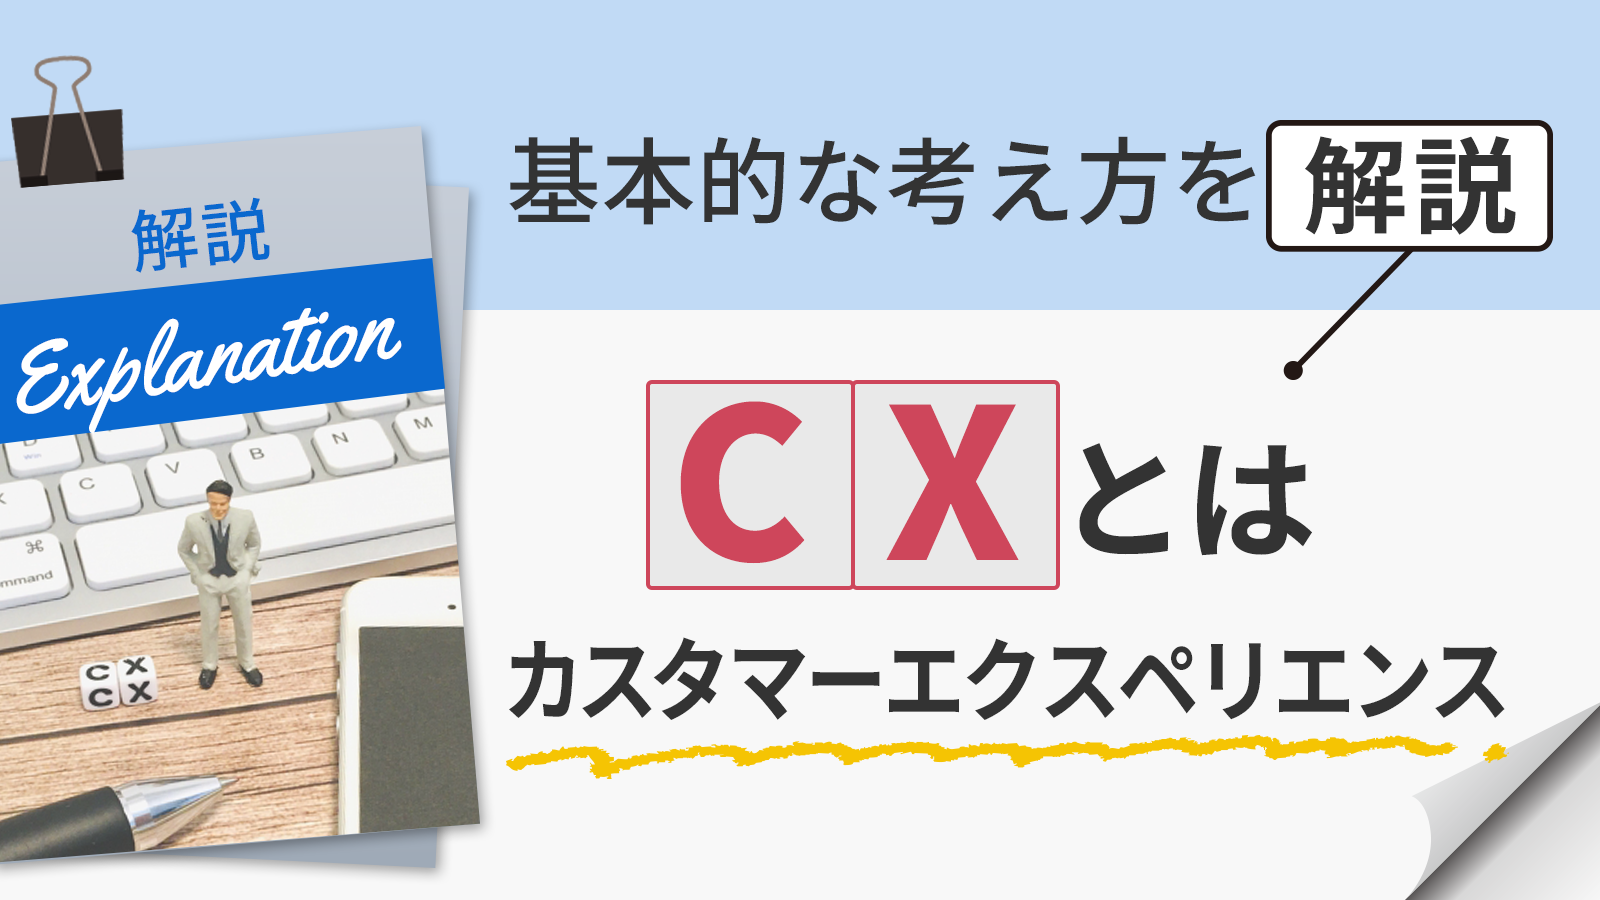 CX（カスタマーエクスペリエンス）とは